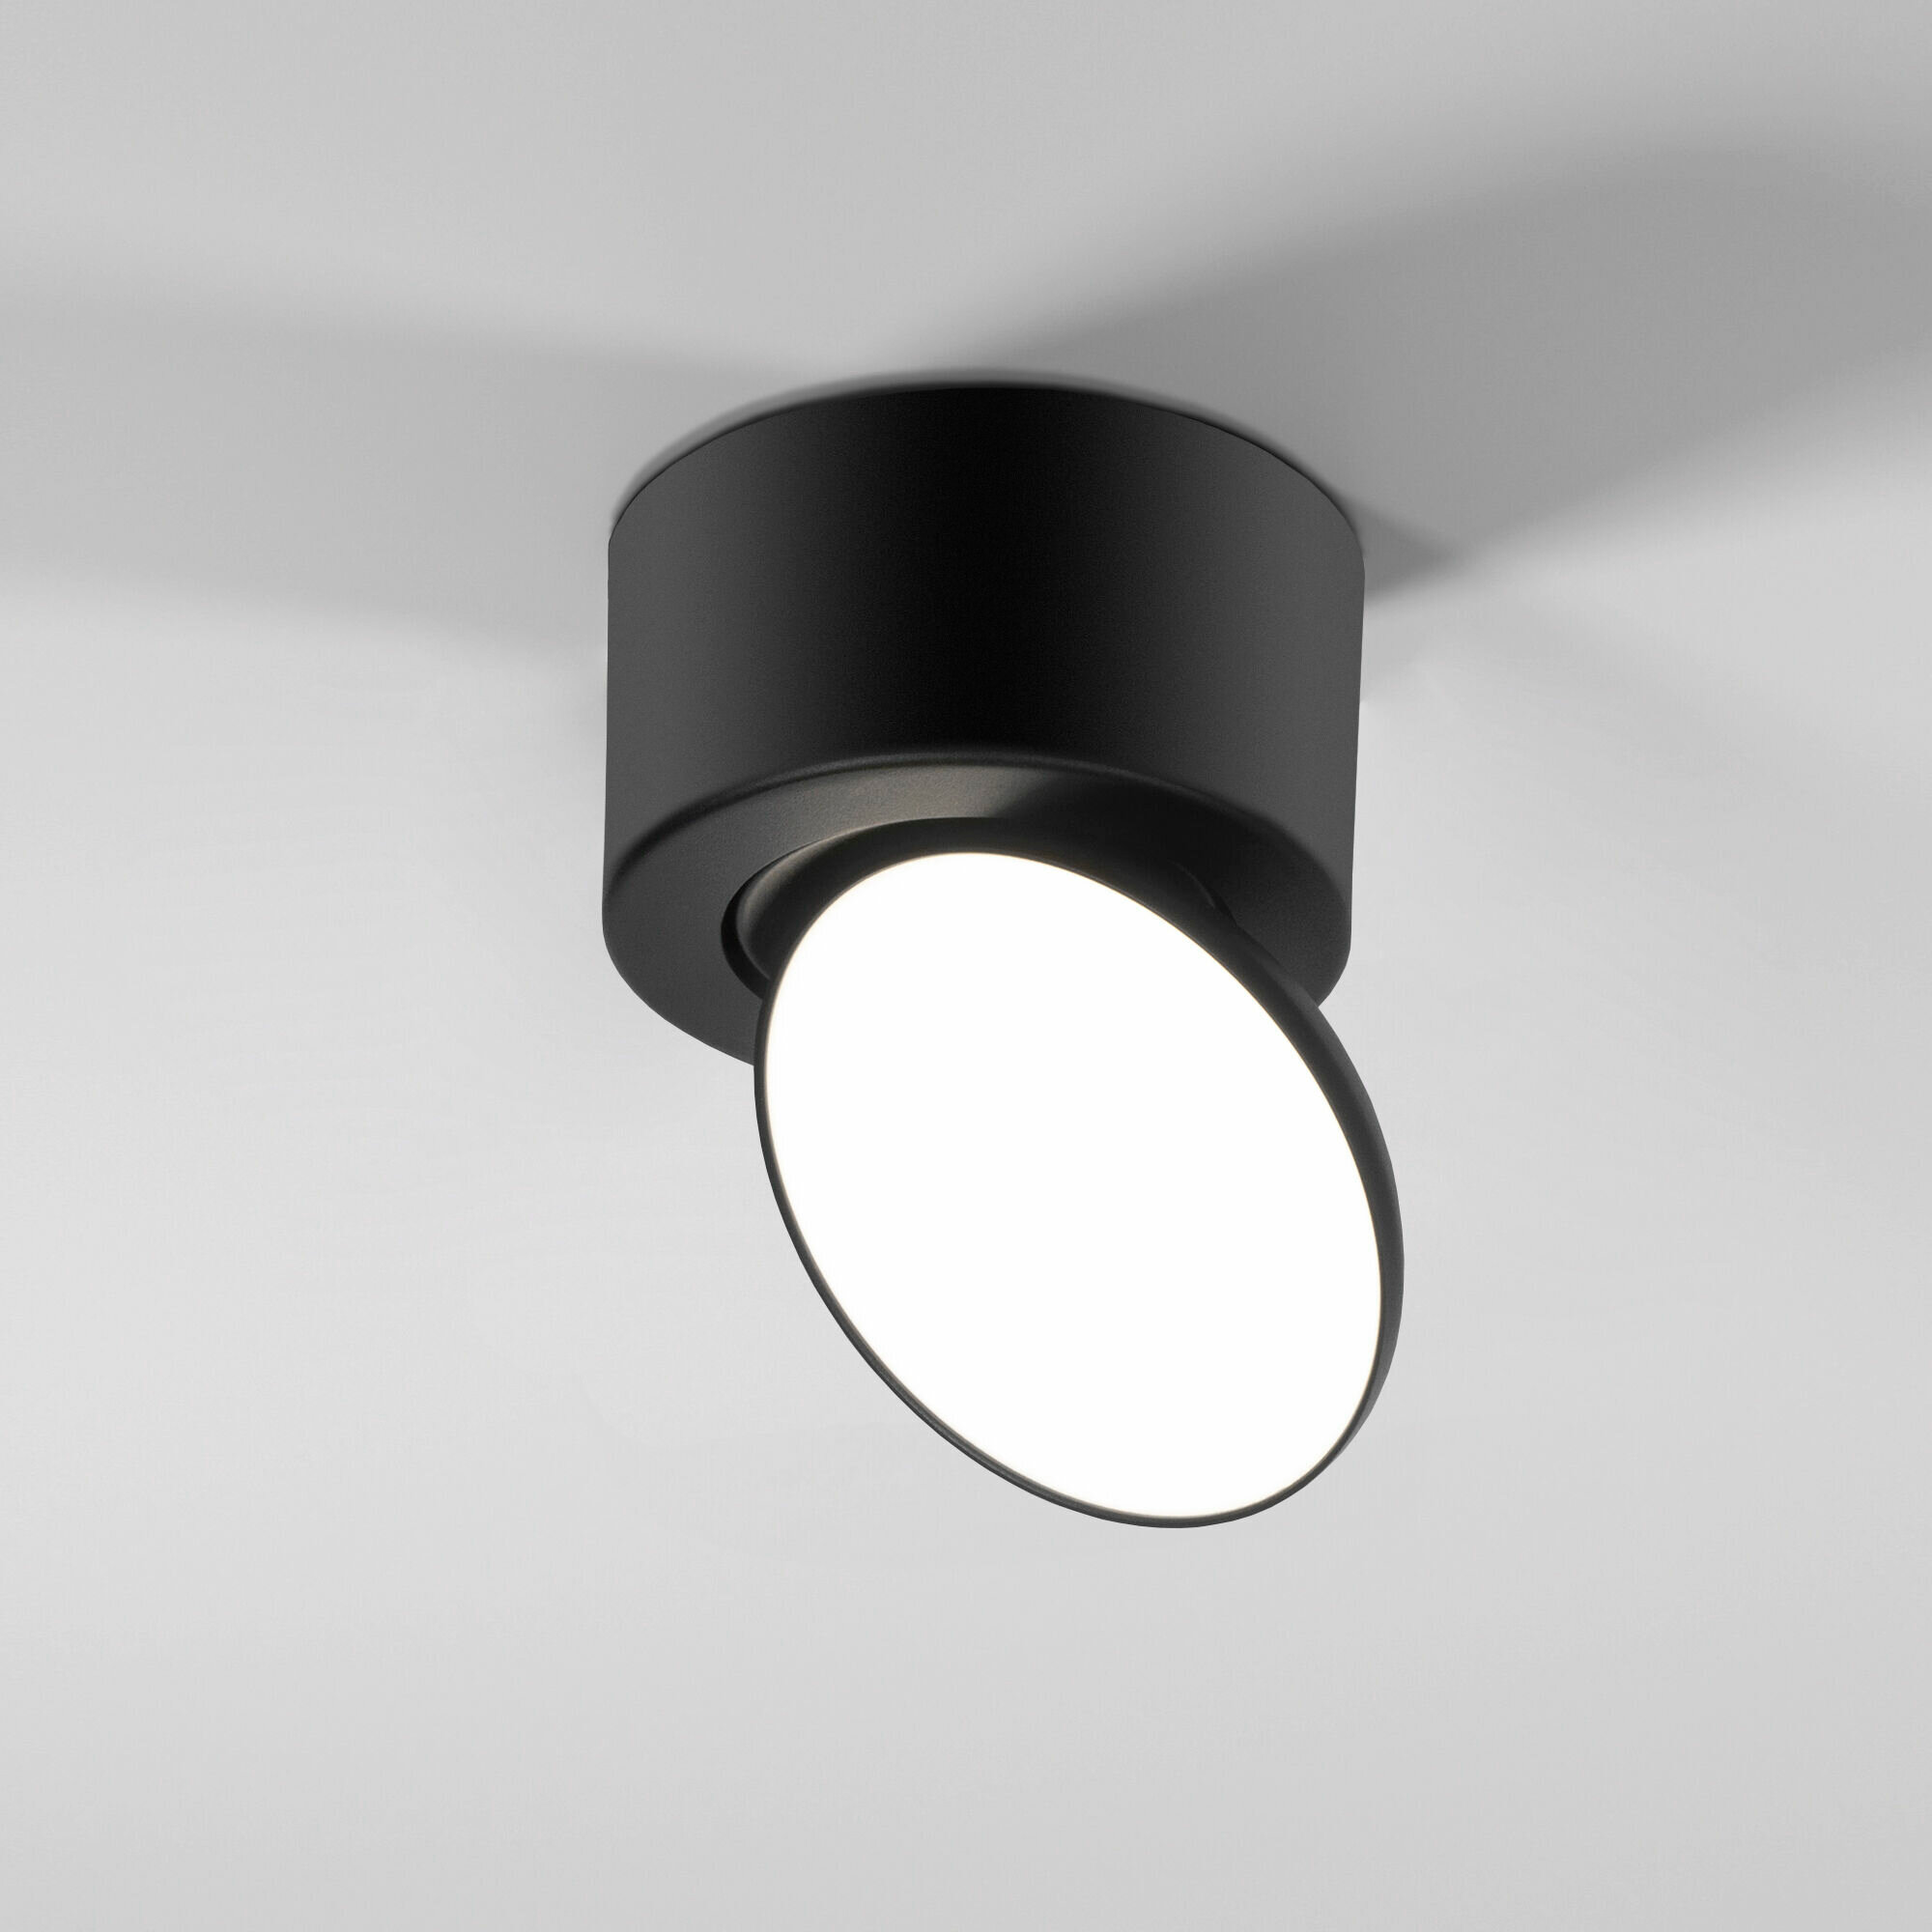 Спот / Накладной потолочный светодиодный светильник с поворотным плафоном Elektrostandard Smooth 25053/LED, 4000 К, 10 Вт, цвет черный